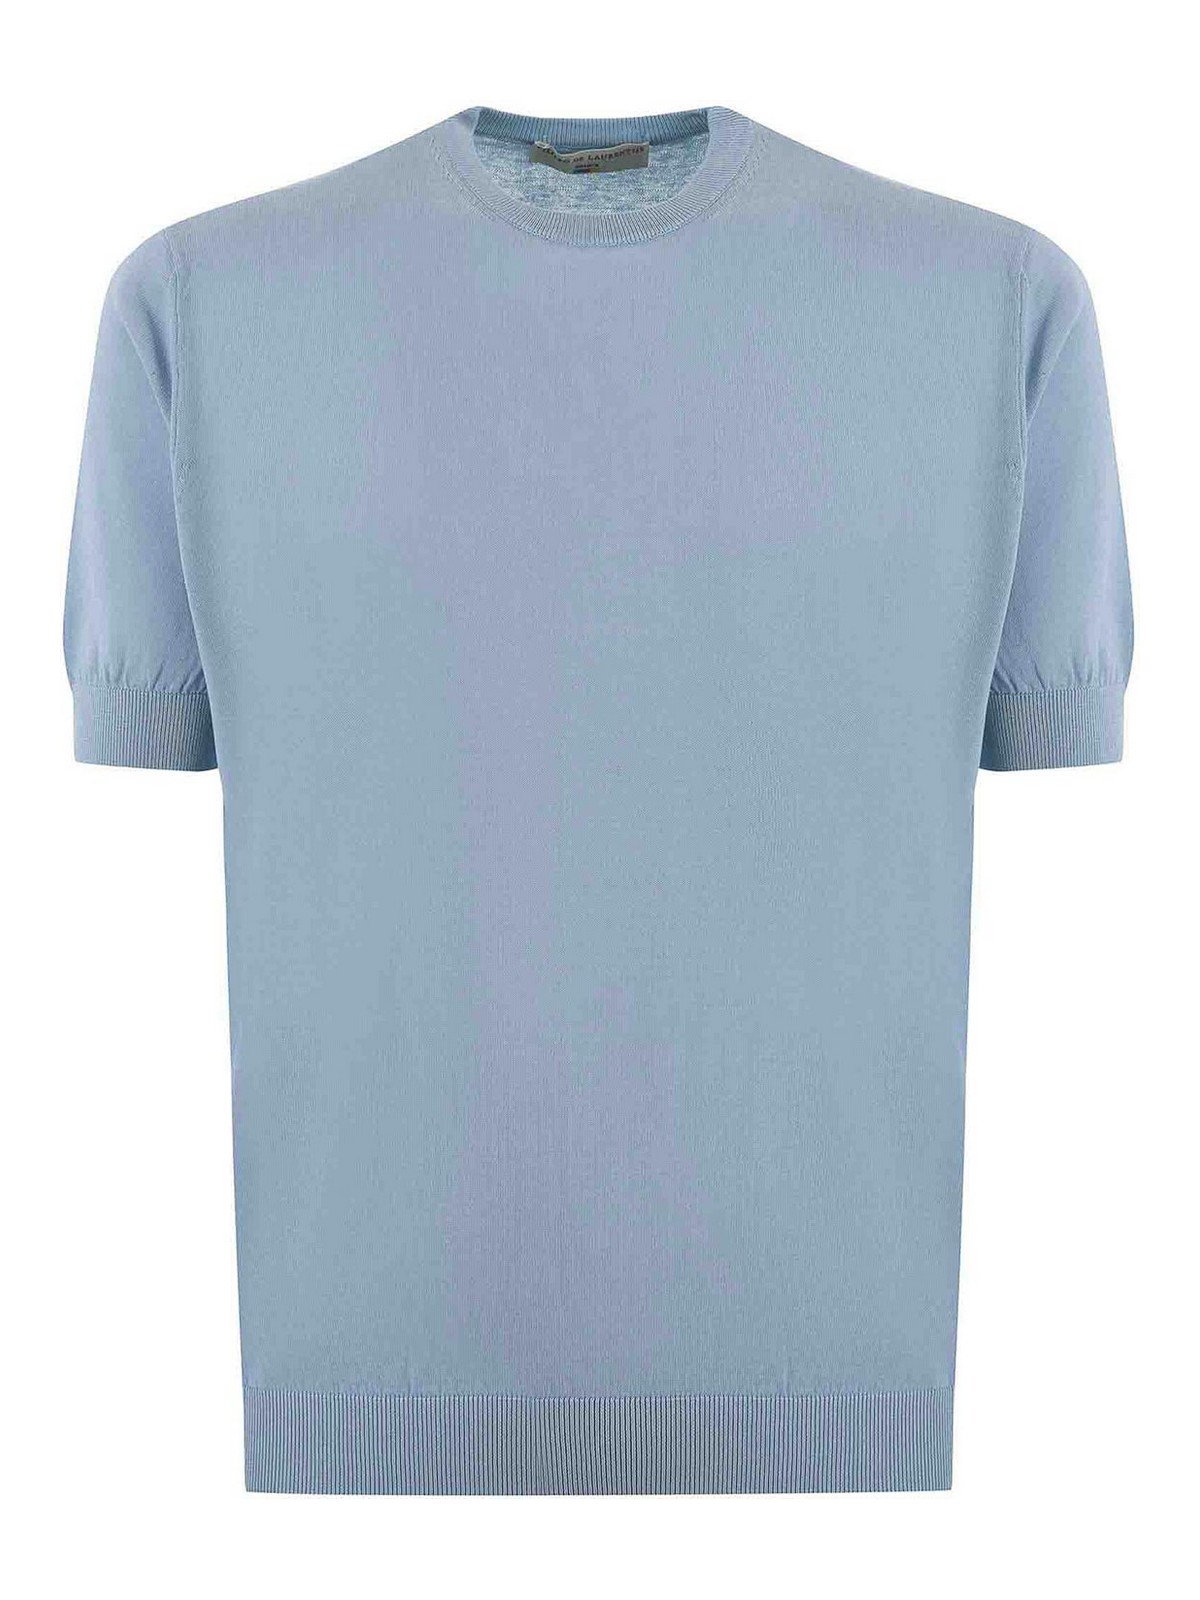 Shop Filippo De Laurentiis Camiseta - Azul Claro In Light Blue